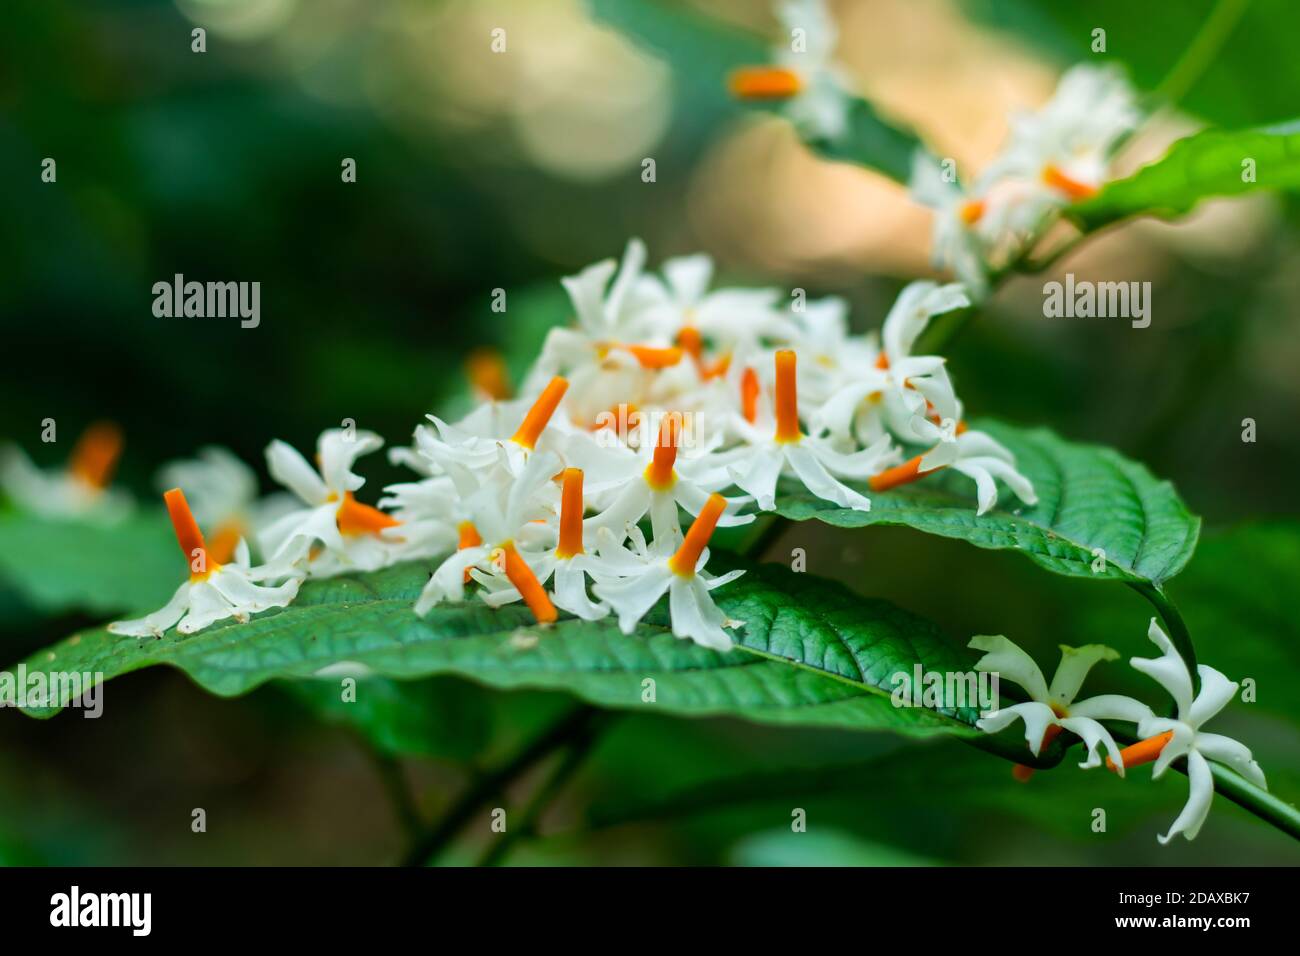 649 Parijat Flower Images Stock Photos  Vectors  Shutterstock